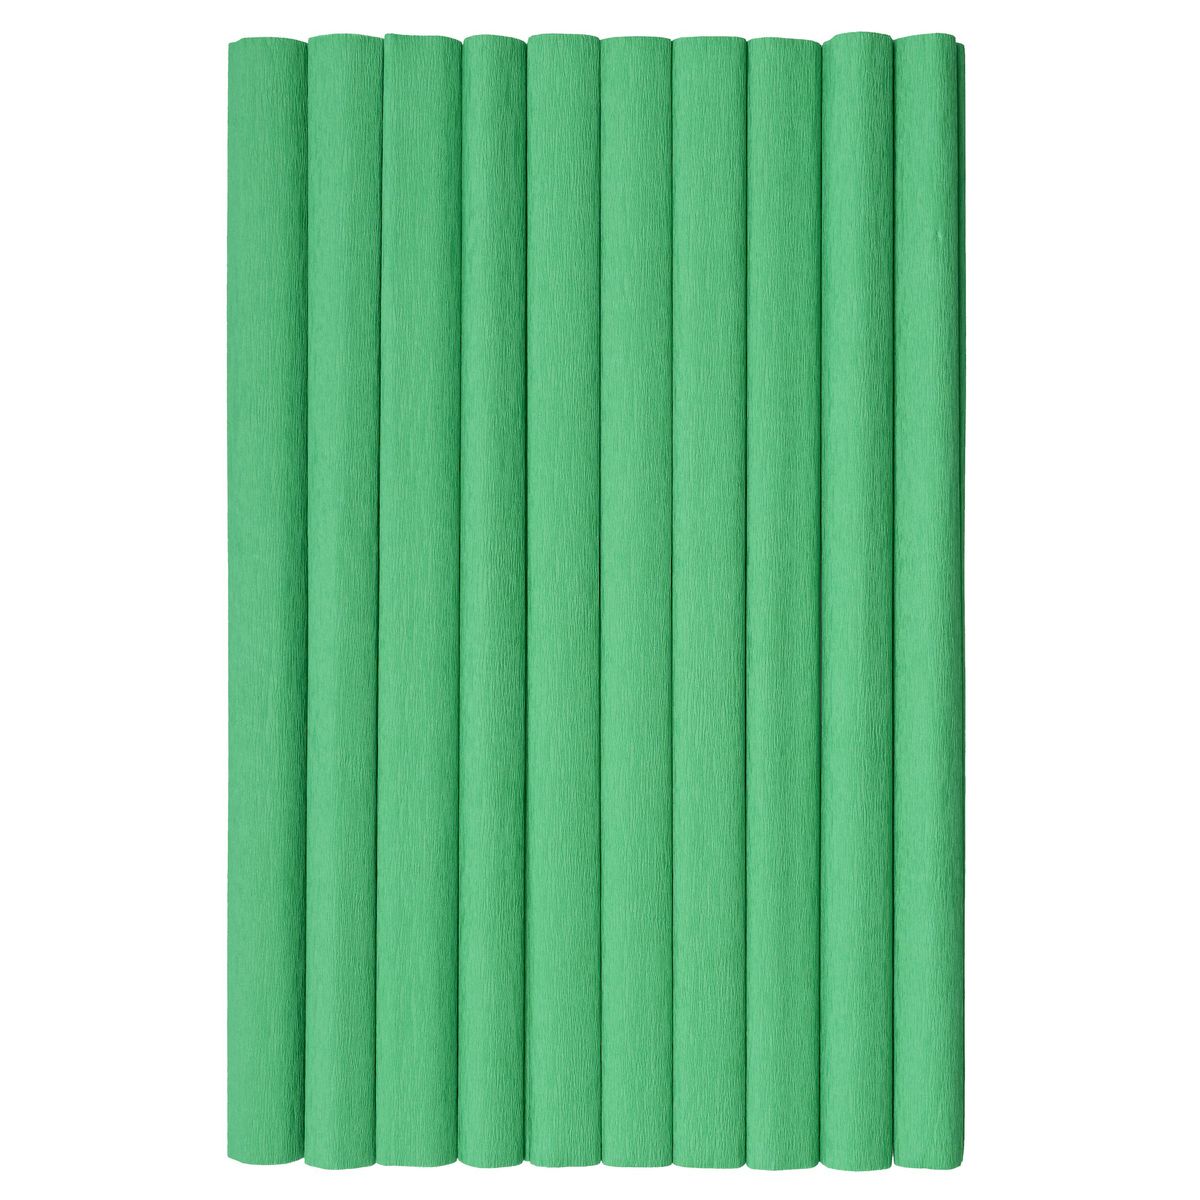 Bibuła marszczona TOP-2000 zielony 20mm x 500mm (400153937)